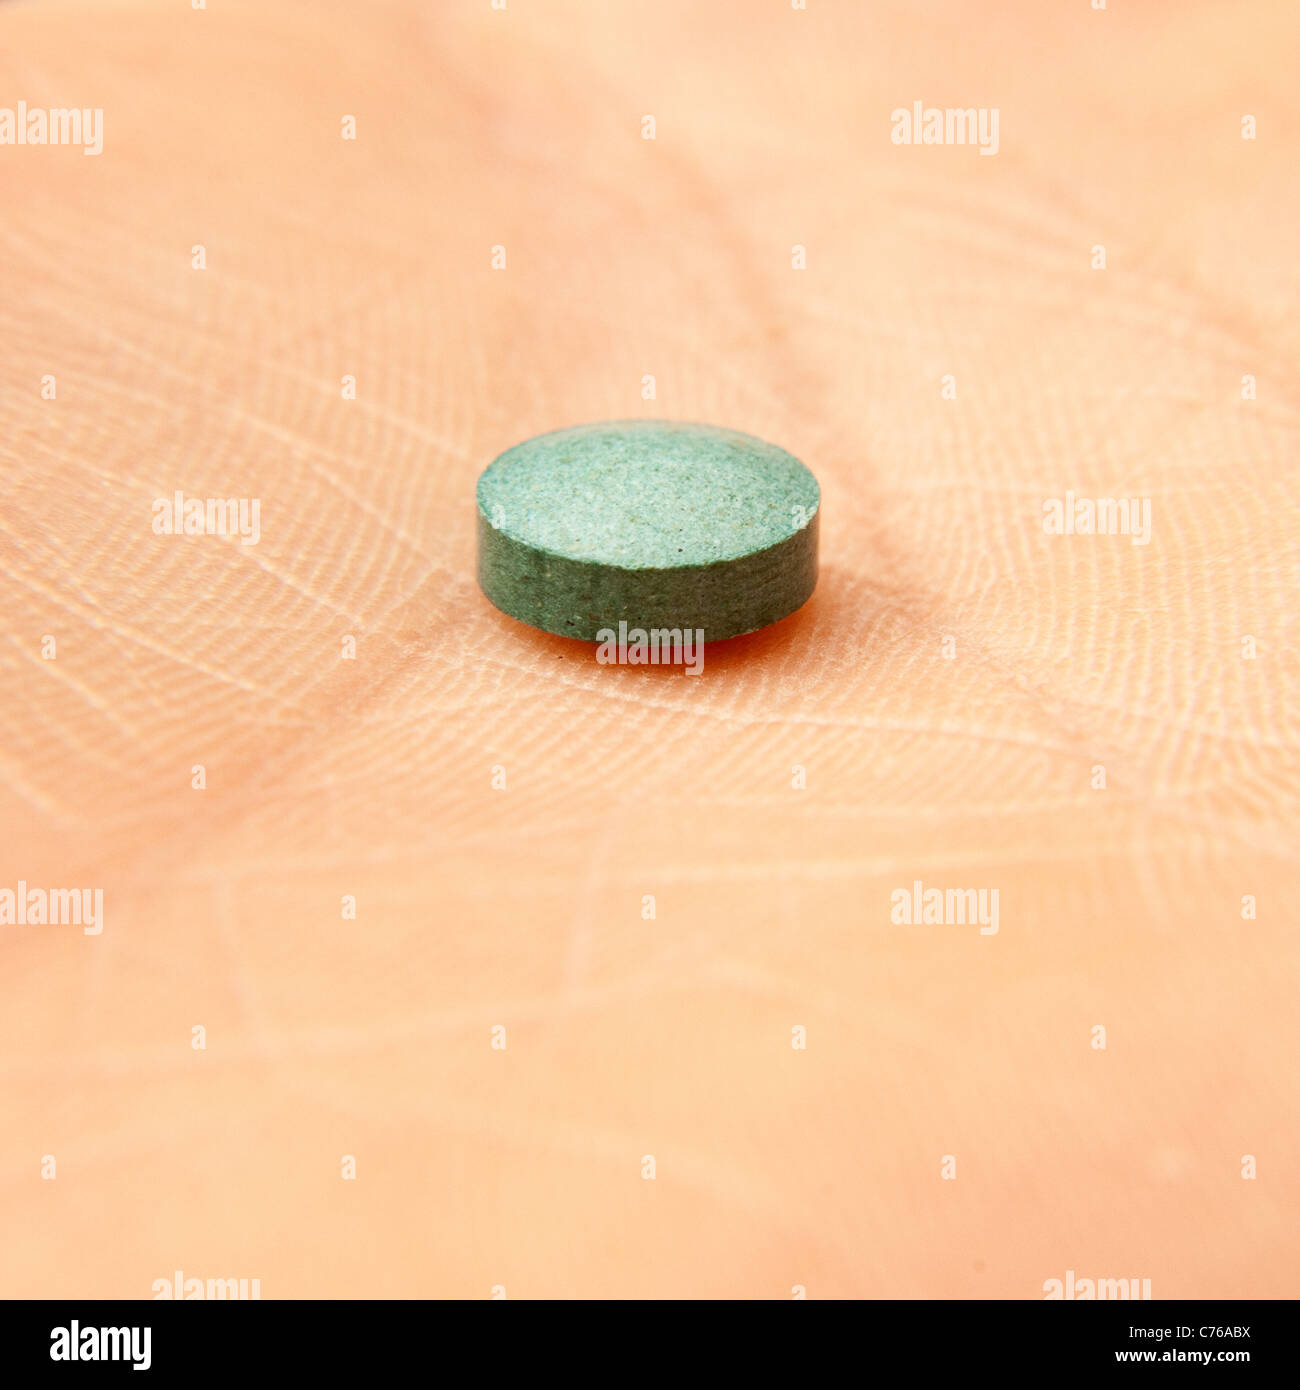 Pellet benzo fury ou comprimé, (6-APB) vendu comme un produit chimique "recherche" c'est un analogue de la MDMA drogues illégales Banque D'Images